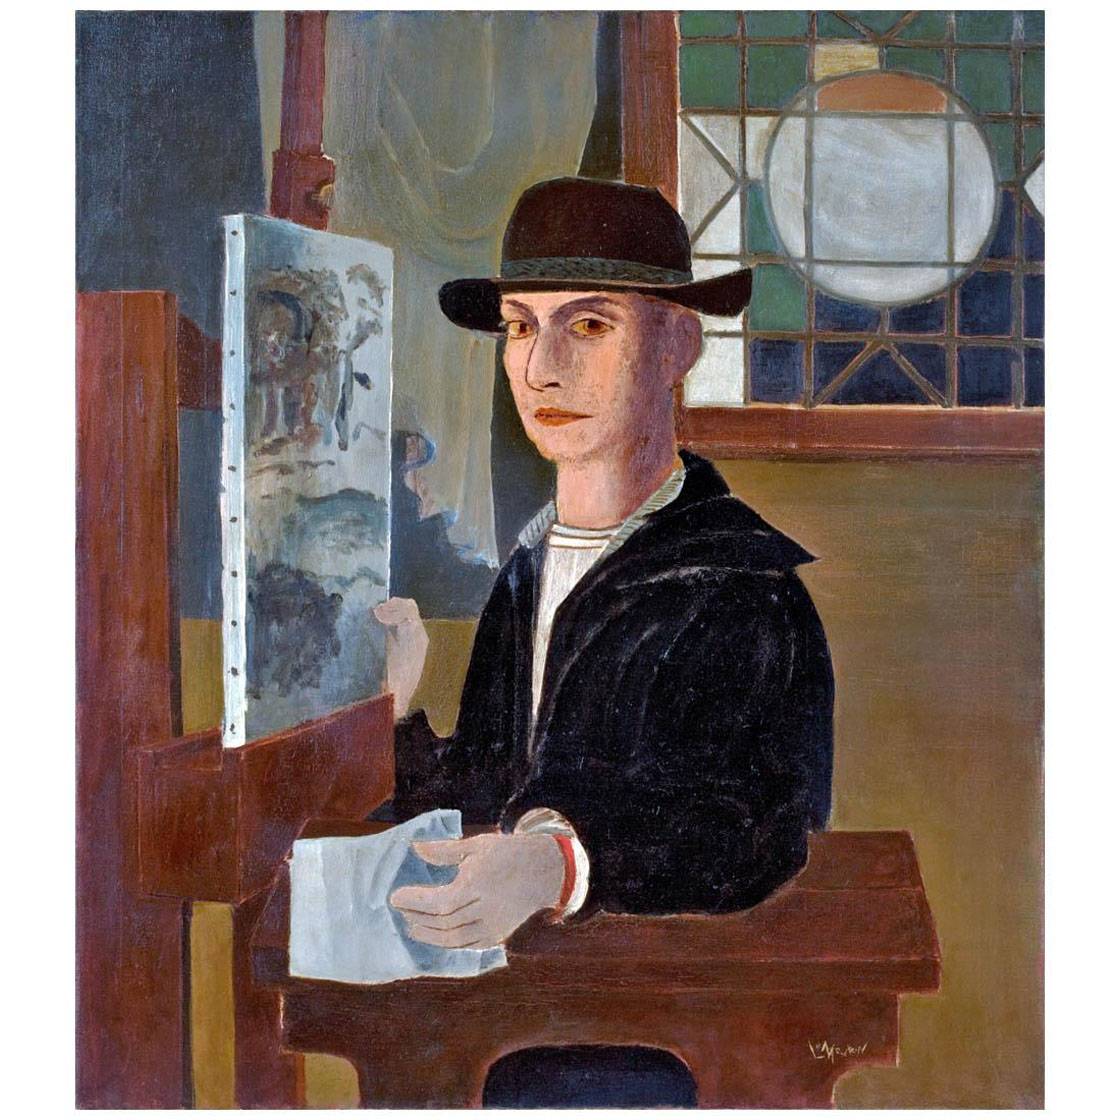 Roy Lichtenstein. Self-Portrait. 1951-1952. Private collection